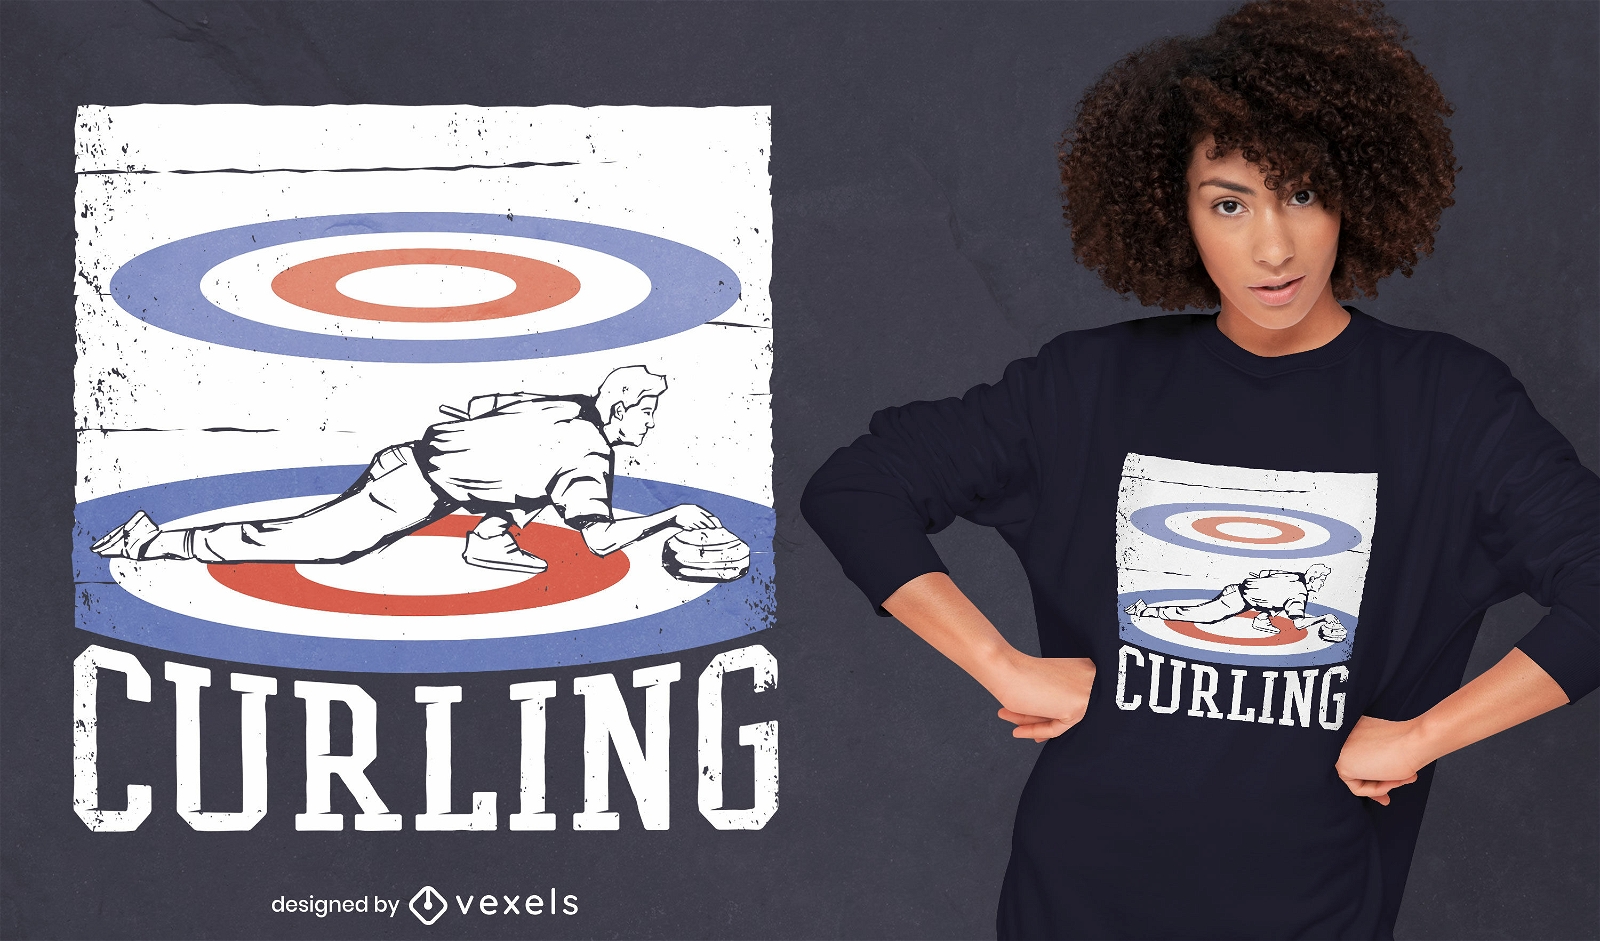 Dise?o de camiseta deportiva de curling.